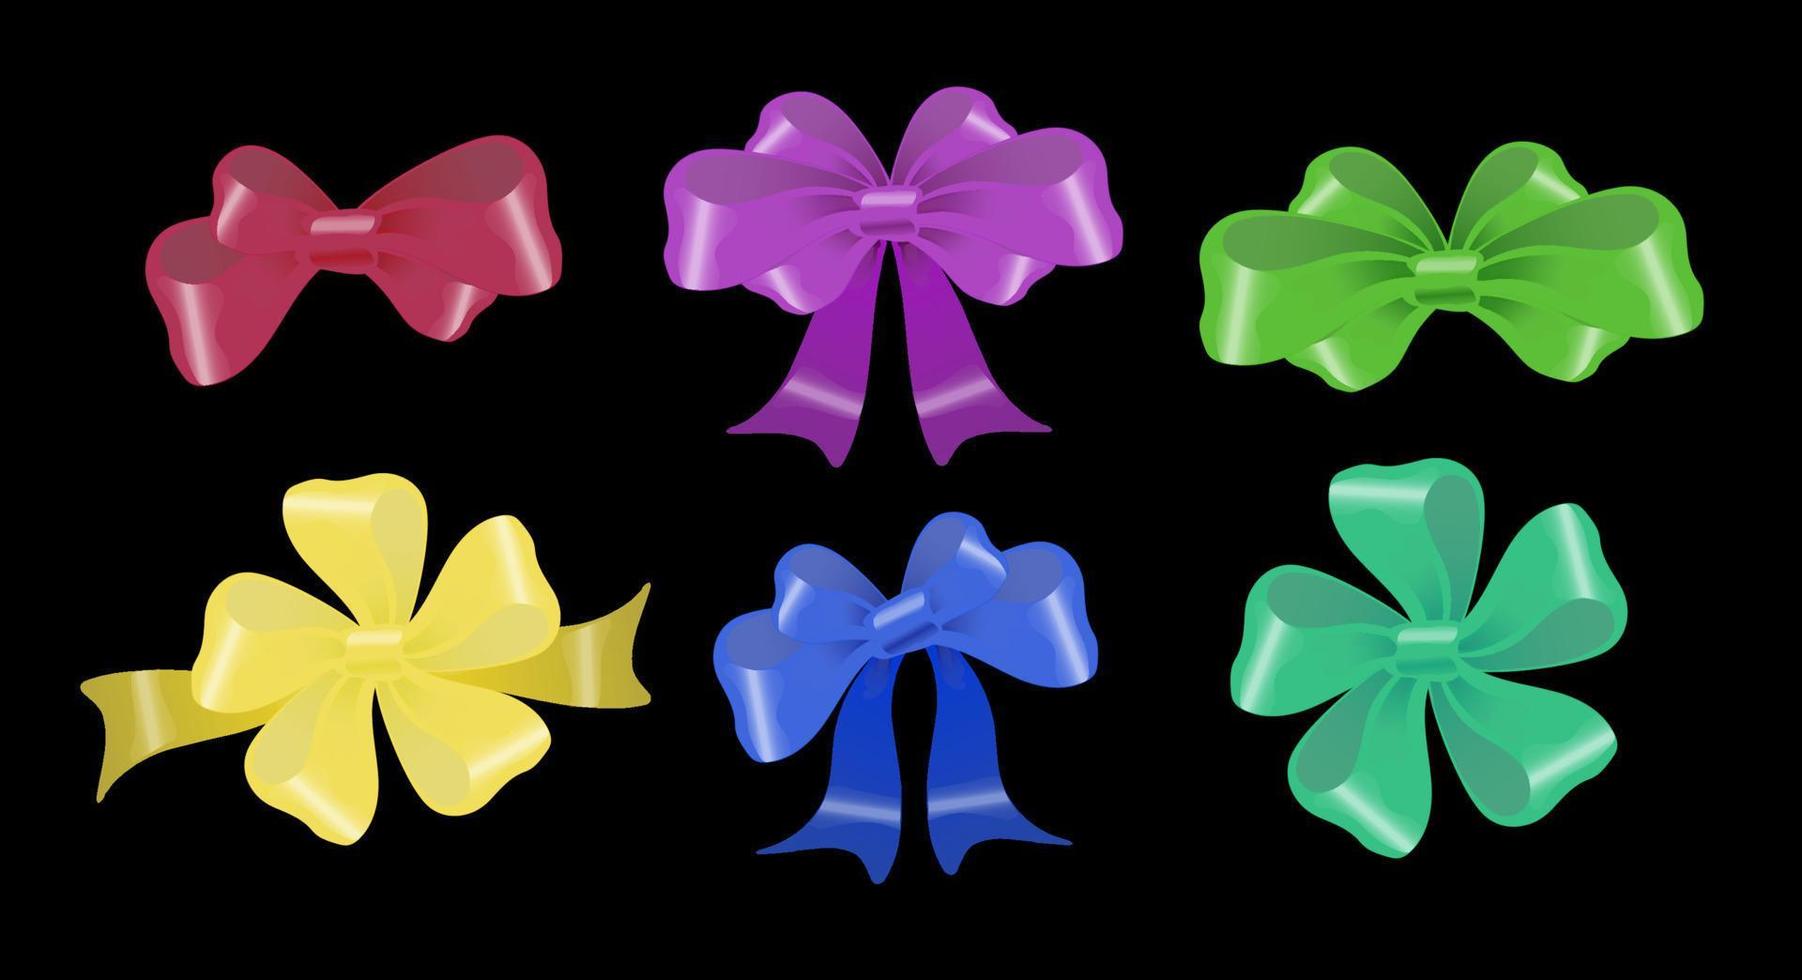 dekorative mehrfarbige Schleifen in verschiedenen Formen vektor